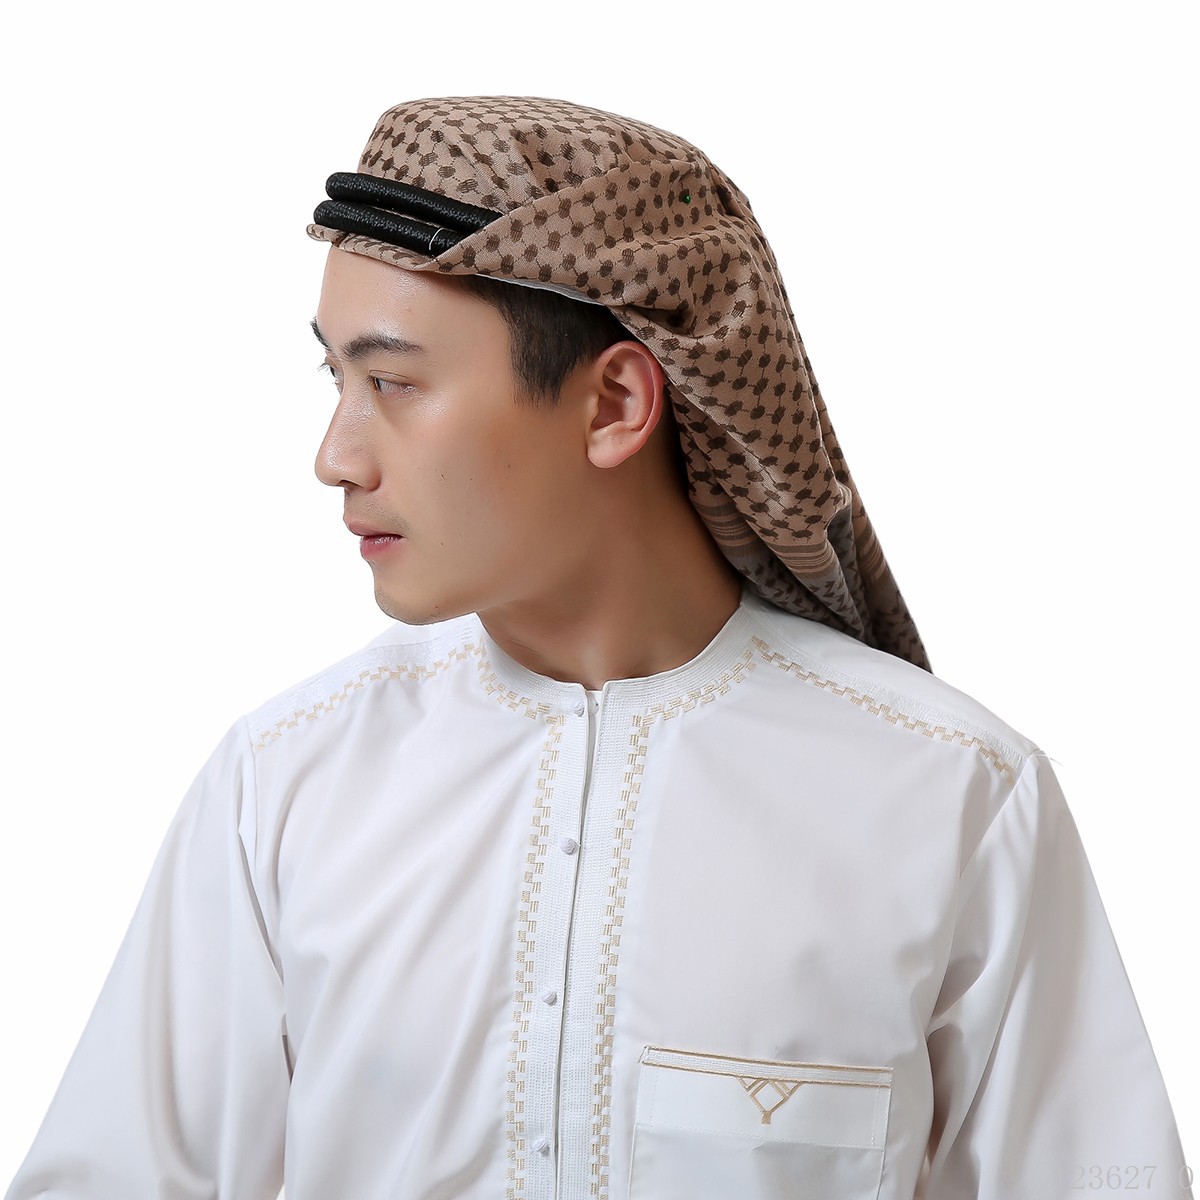 穆斯林男头巾迪拜旅游阿拉伯头巾杂色缠头 头箍厂家直销跨境代发